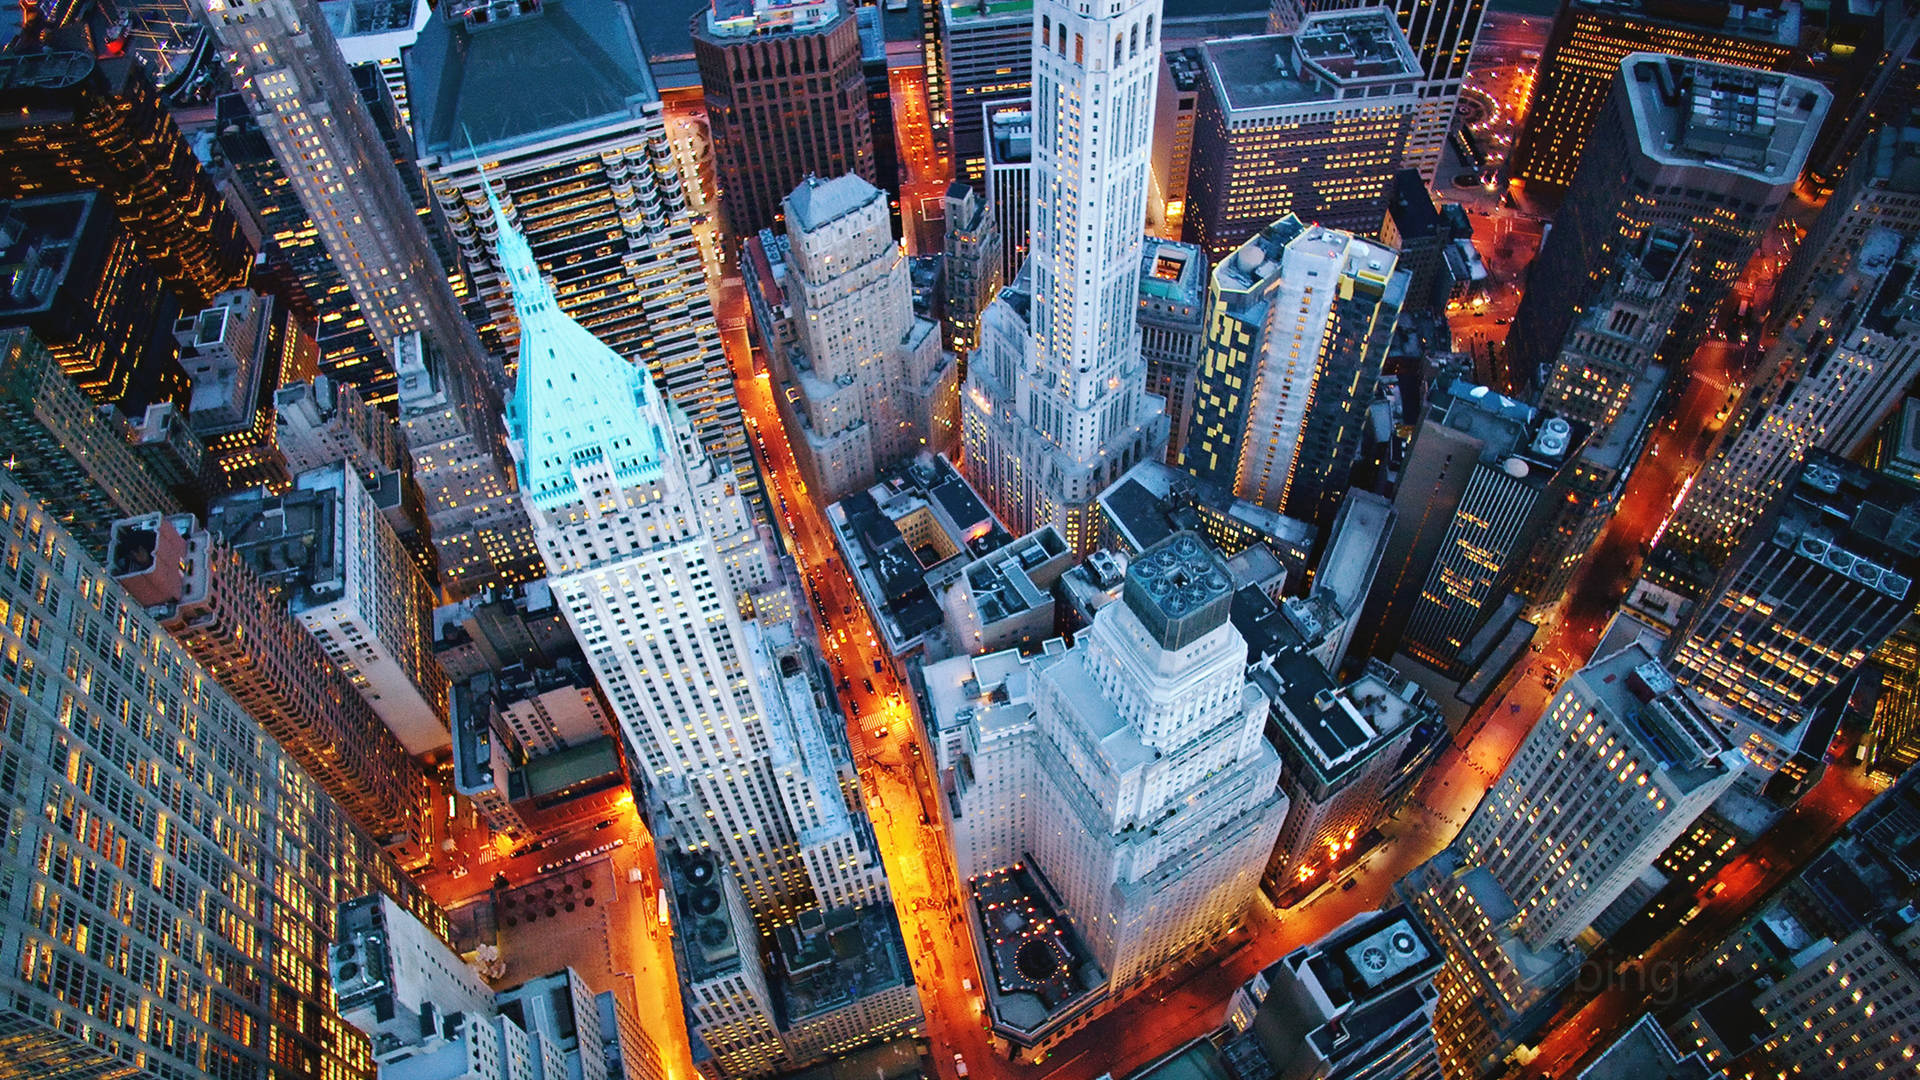 Vistaaerea Di New York City In 4k Sfondo